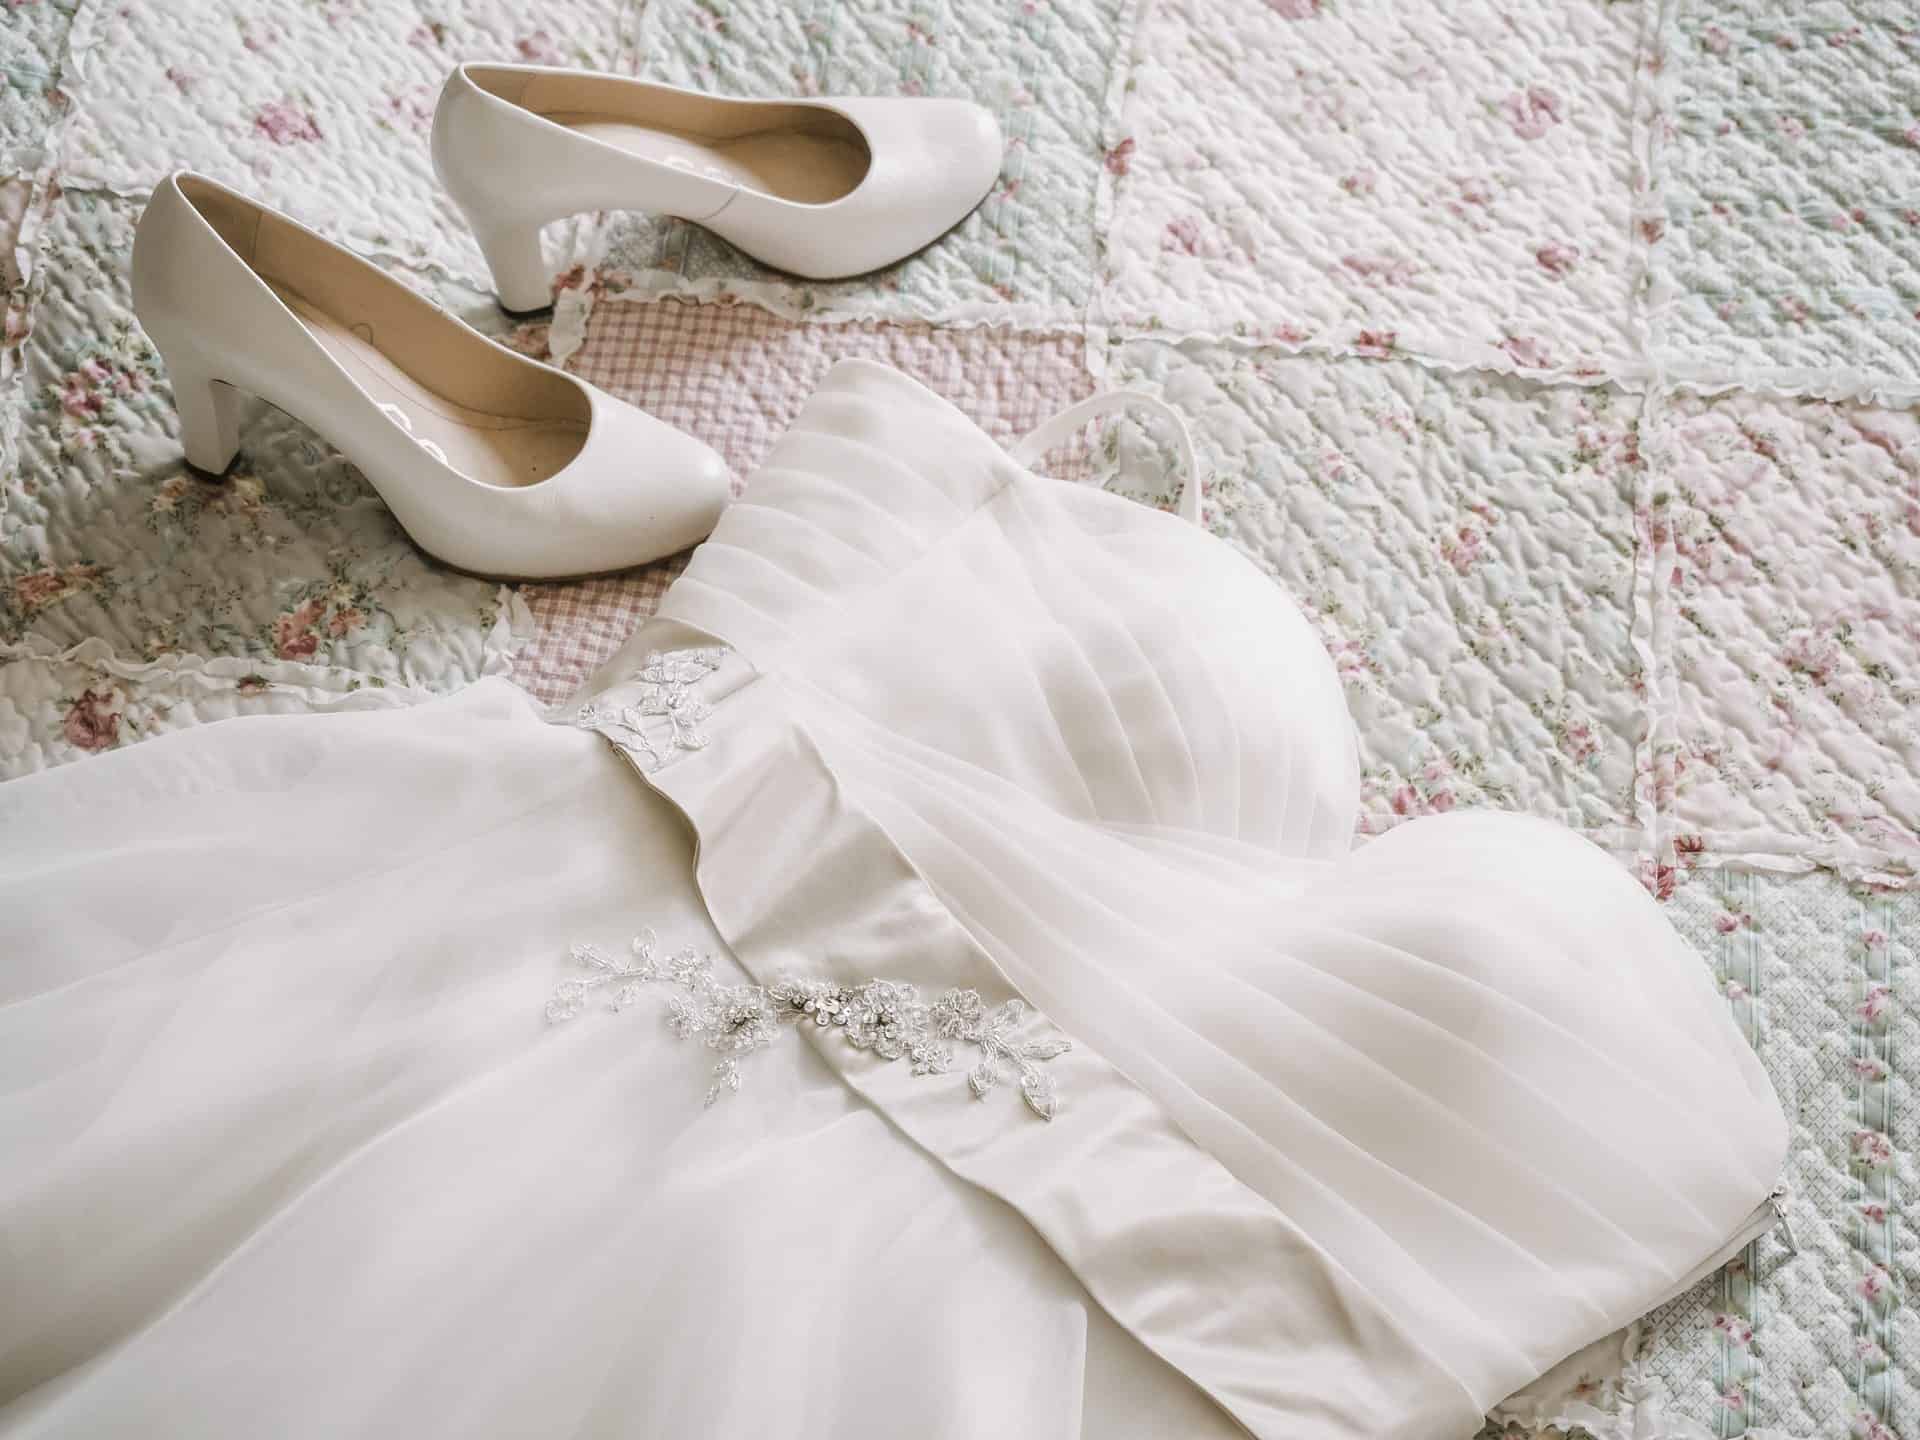 Ein weißes Hochzeitskleid und weiße Schuhe auf einer Steppdecke.